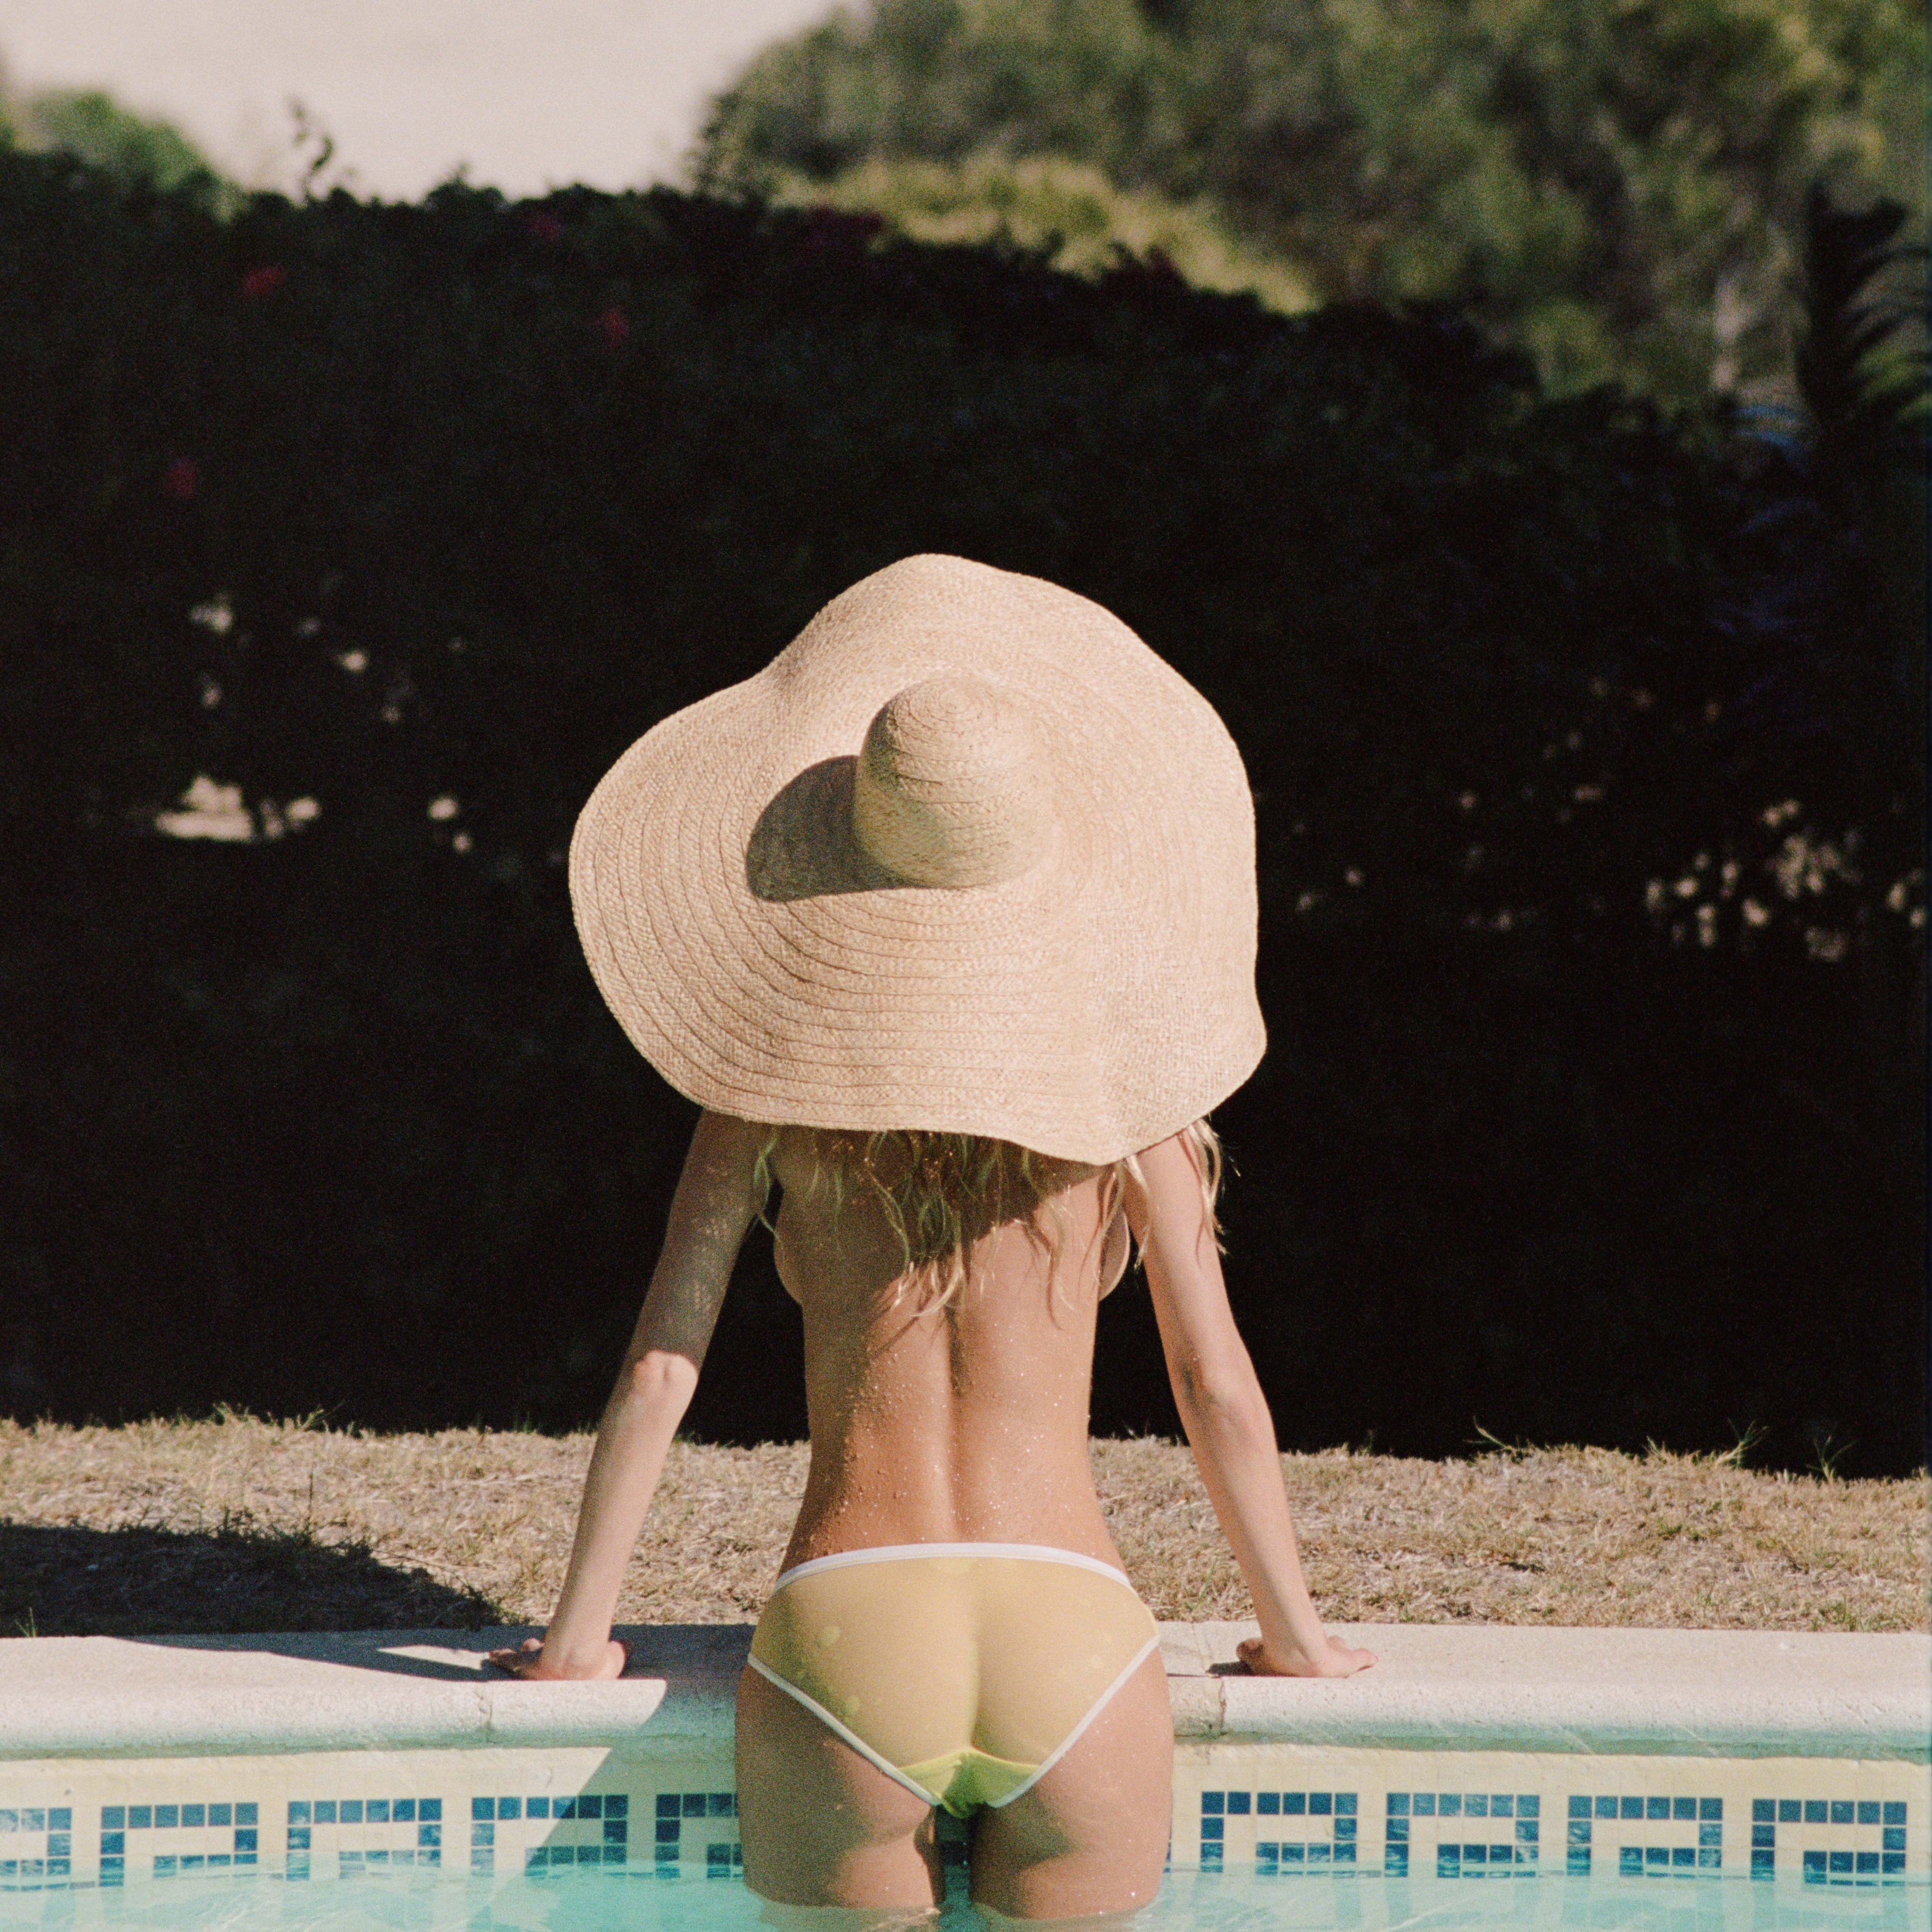 Соломенная шляпа &- самый эффектный и фотогеничный аксессуар отпускного гардероба